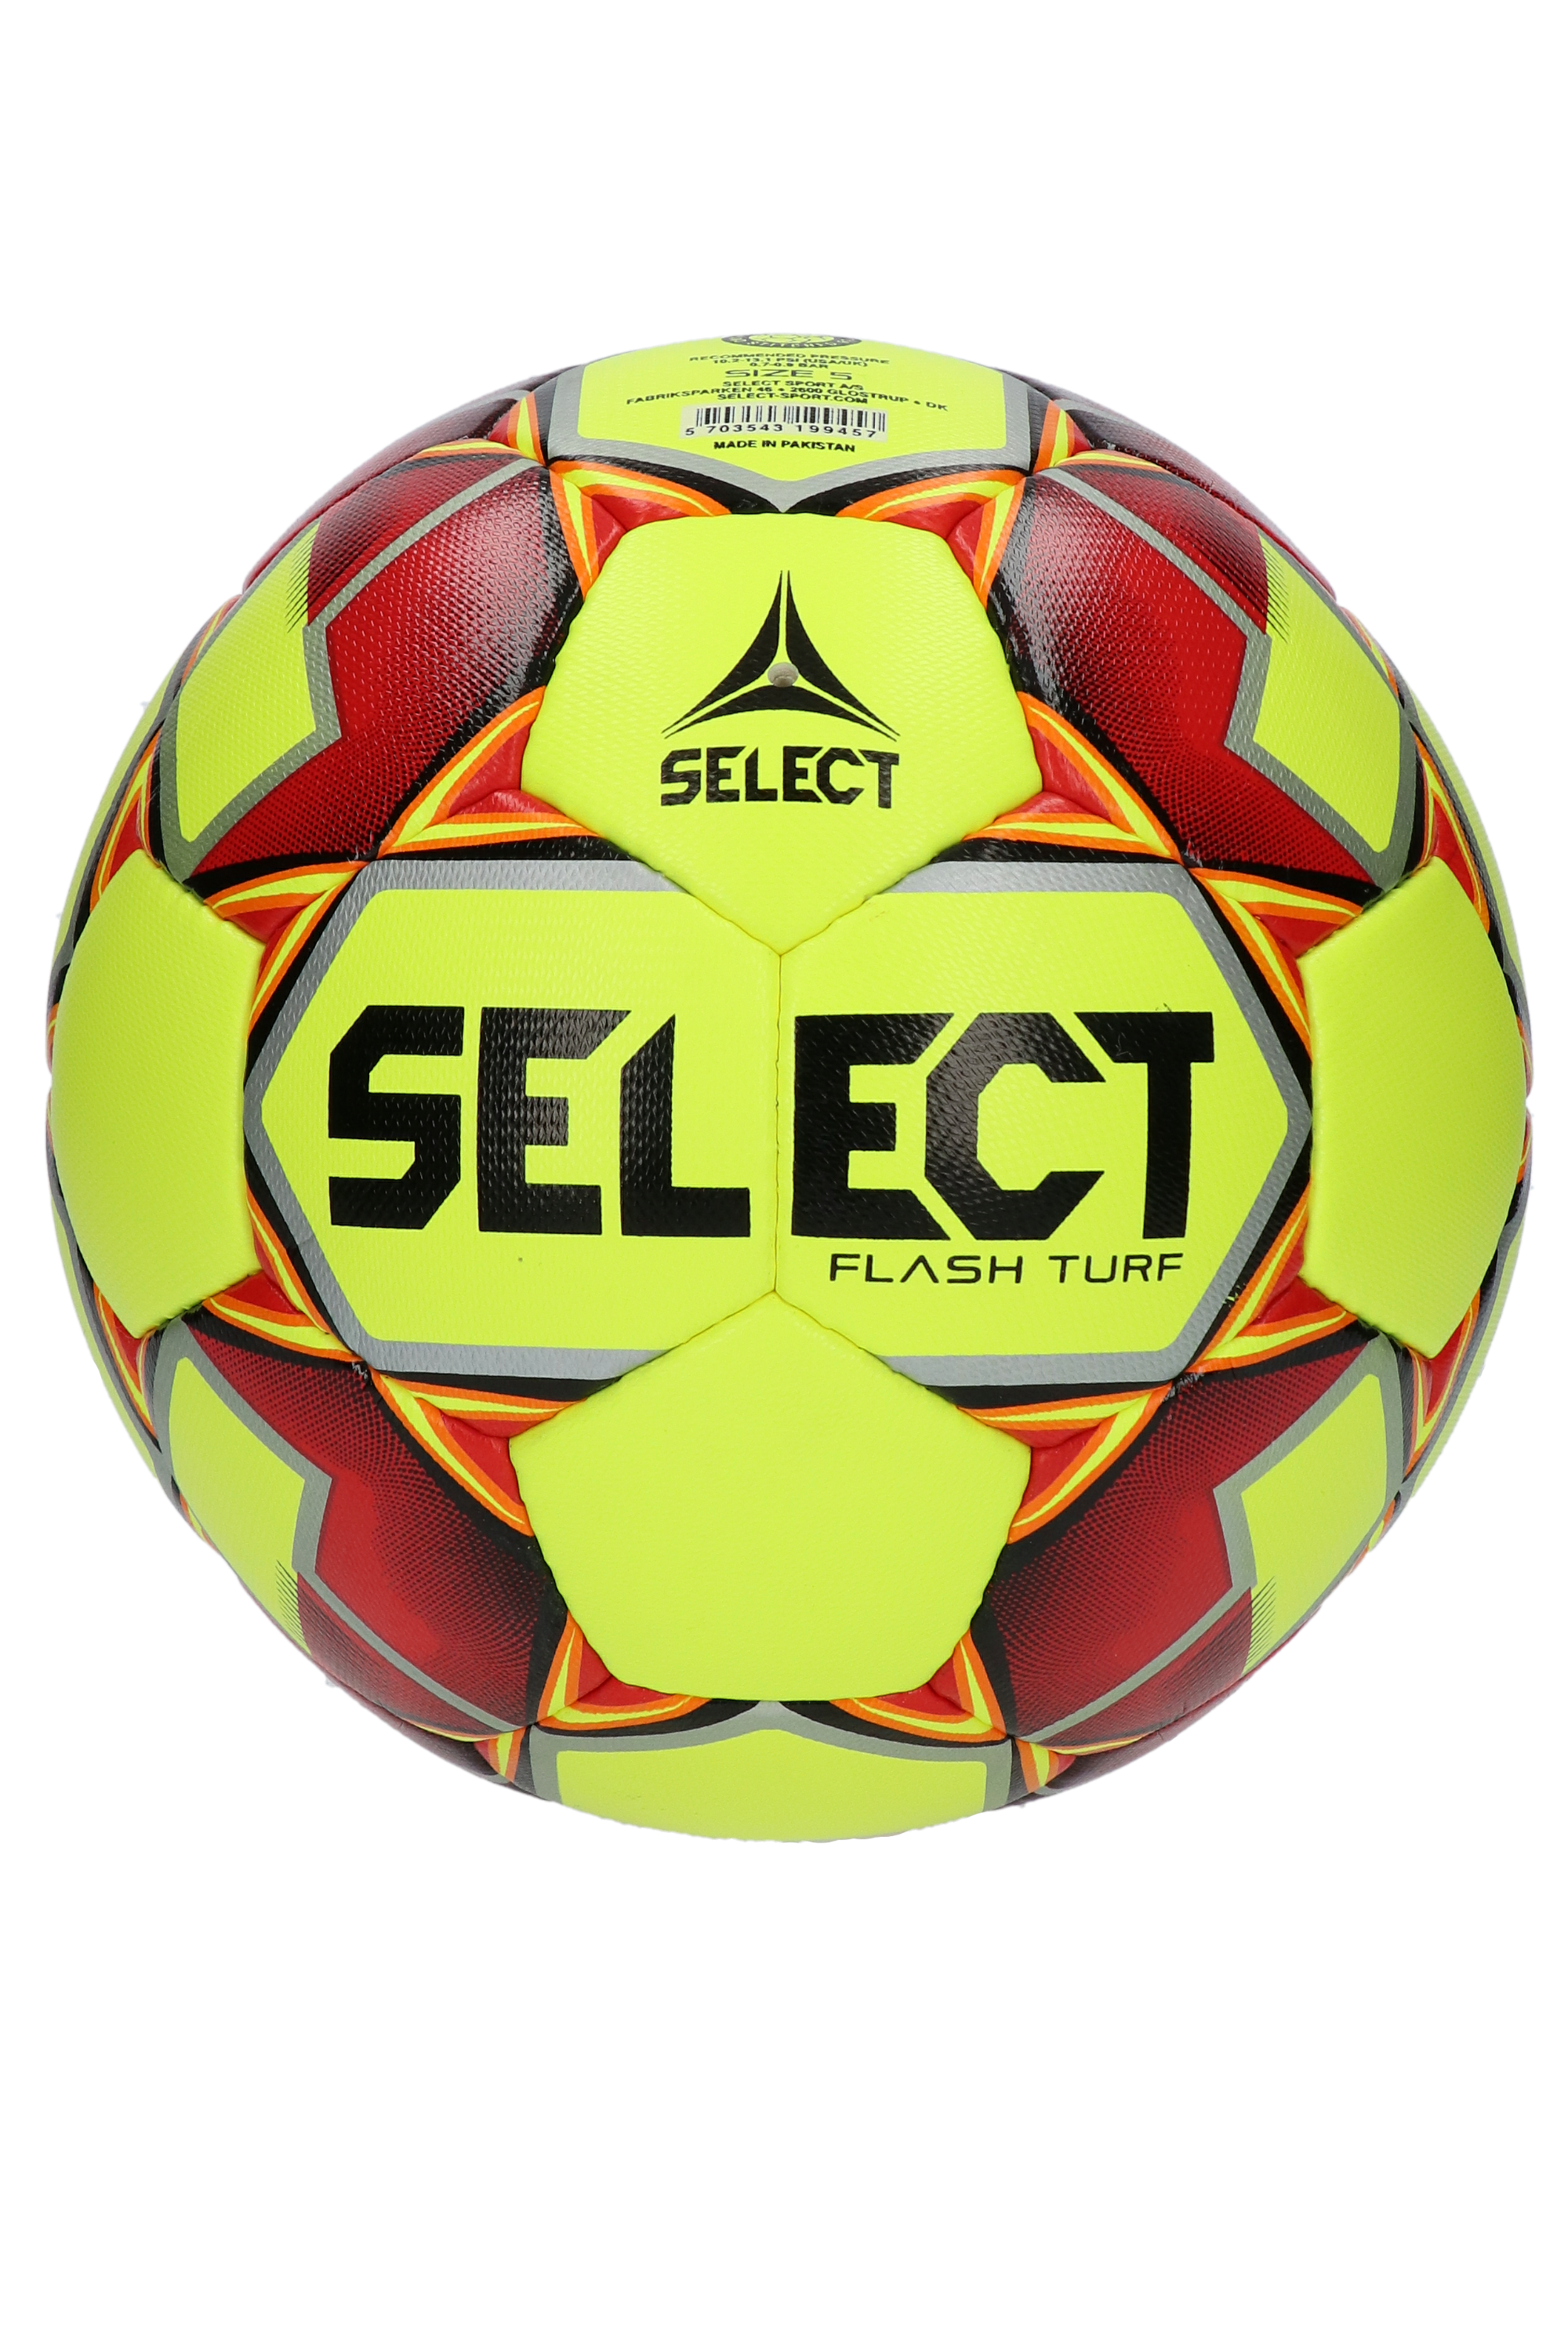 Select Pallone da Calcio Unisex Giallo/Arancione 4 Flash Turf 